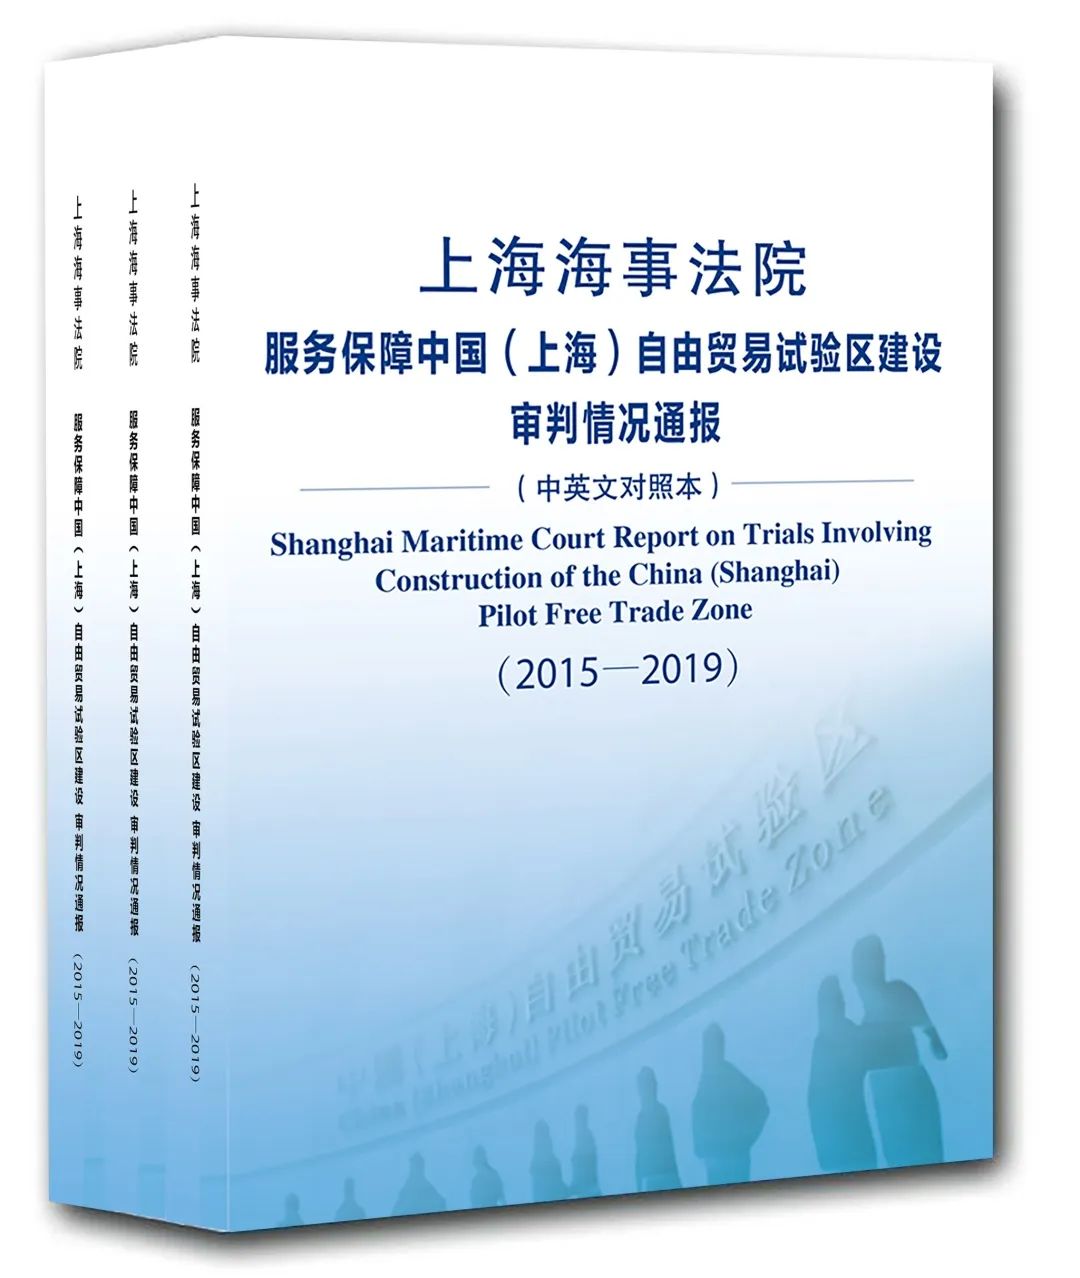 自贸区海事案件呈现新特点 上海海事法院发布